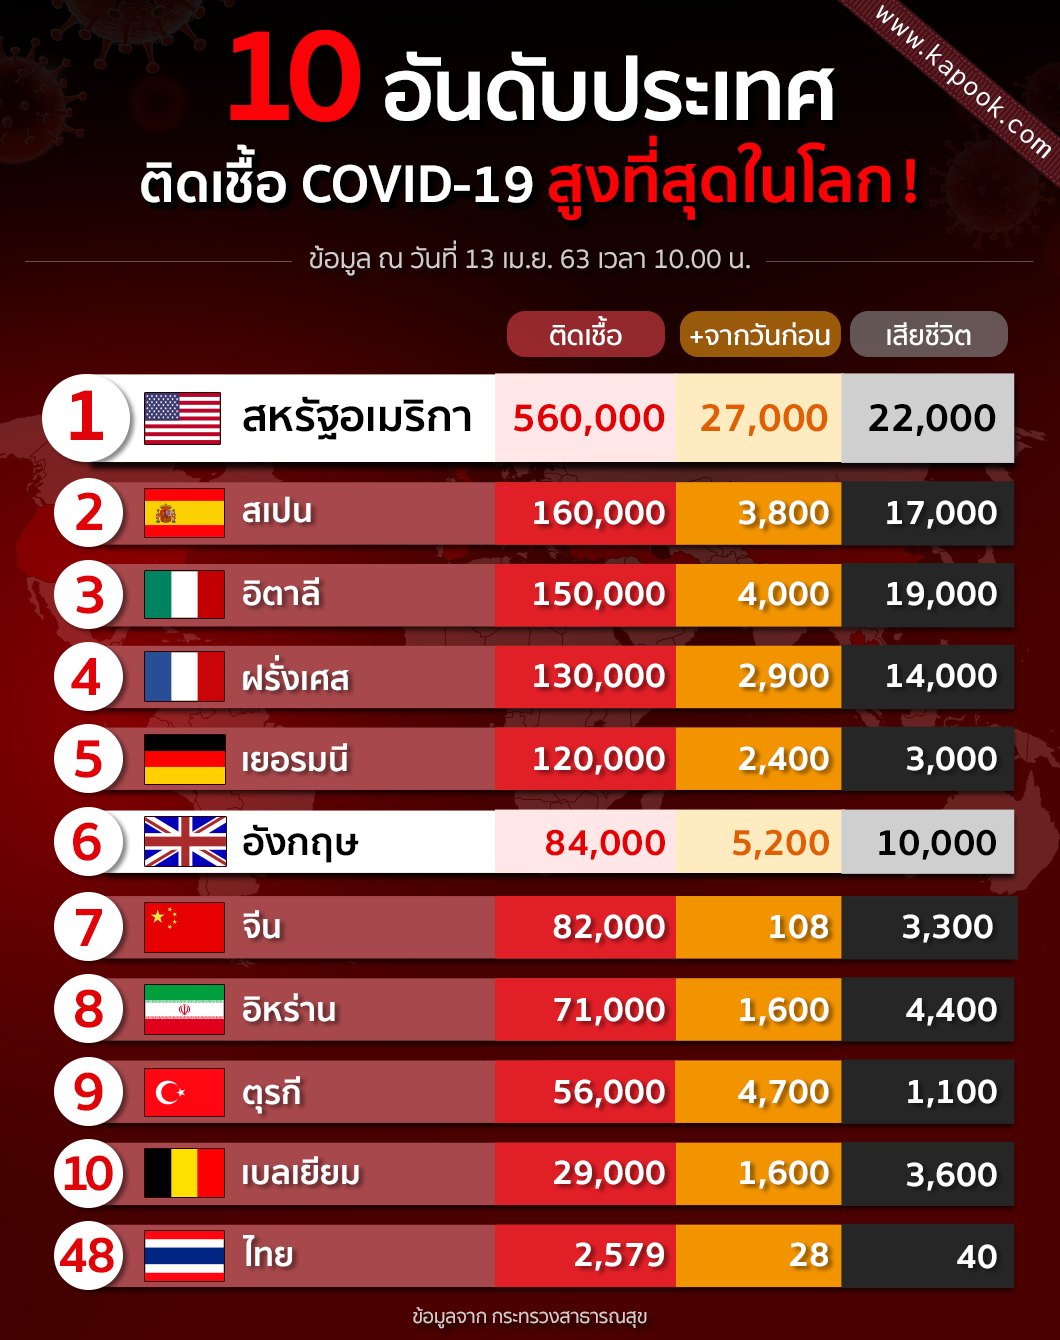 10 ประเทศติดเชื้อ COVID-19 สูงที่สุดในโลก